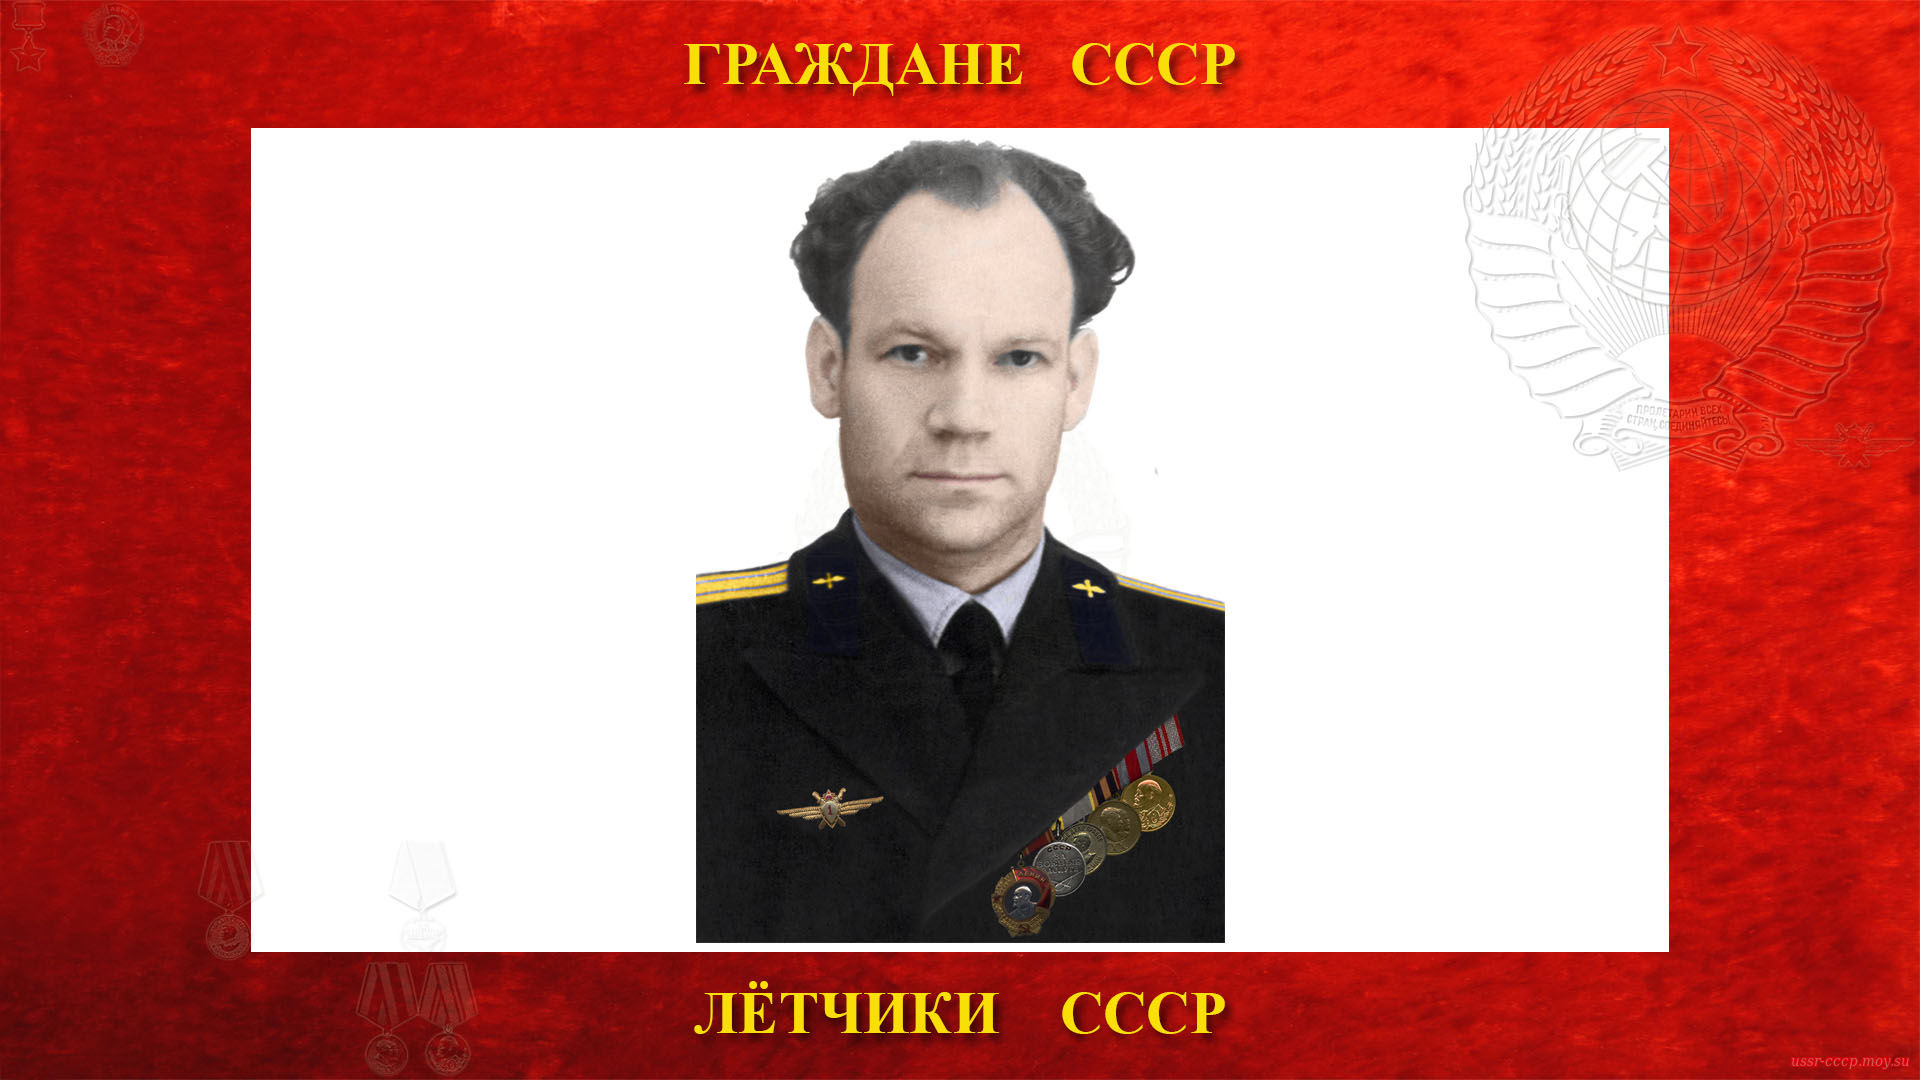 Алашеев Ю.Т. — (биография)